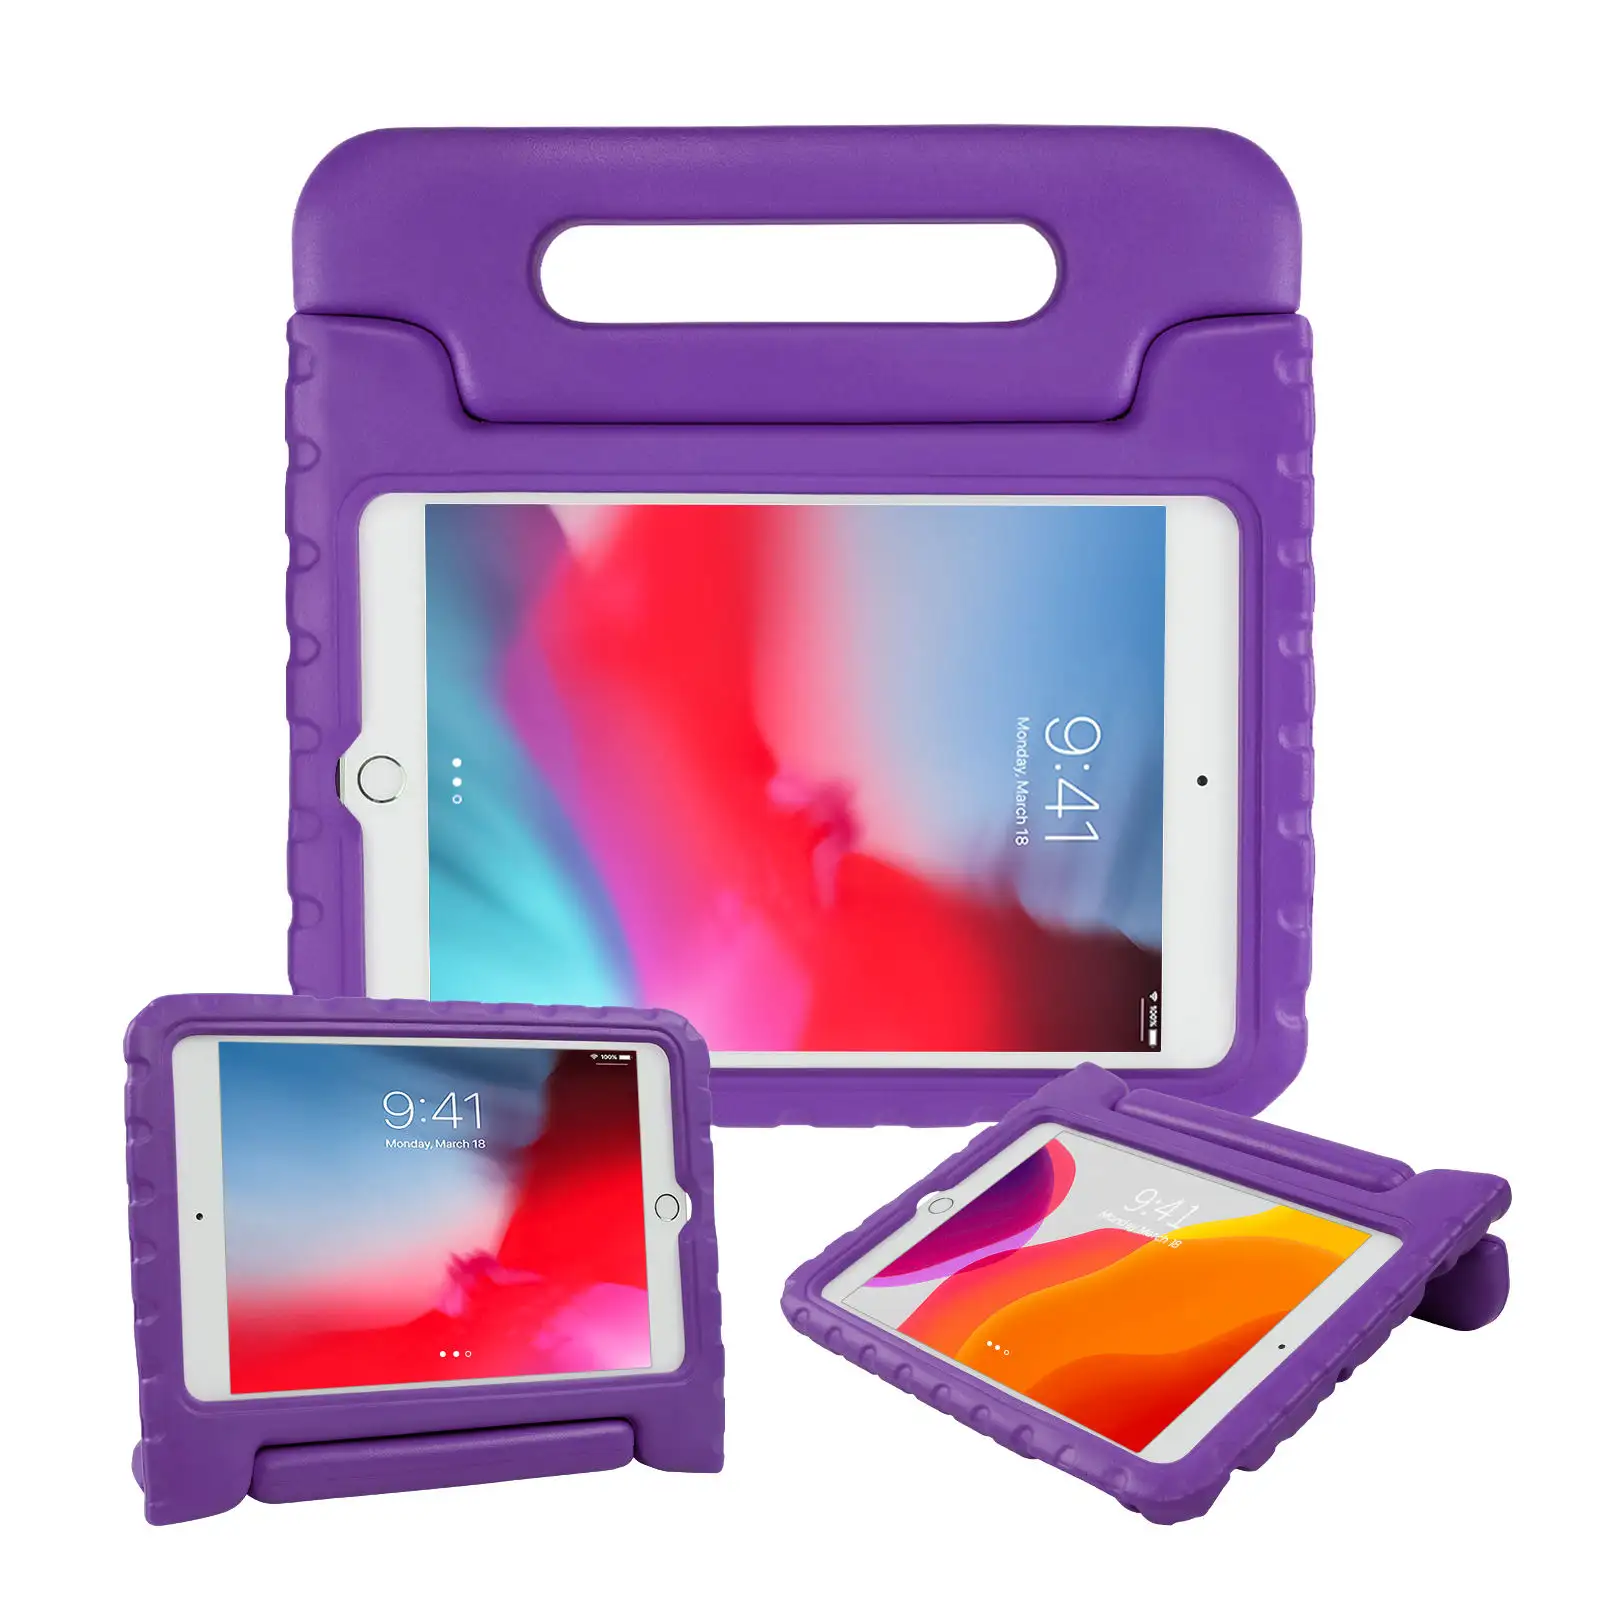 Hülle für iPad Mini 5 Hülle für iPad mini 1 2 3 7,9 Zoll EVA Soft Tablet-Hülle für iPad Mini 2019